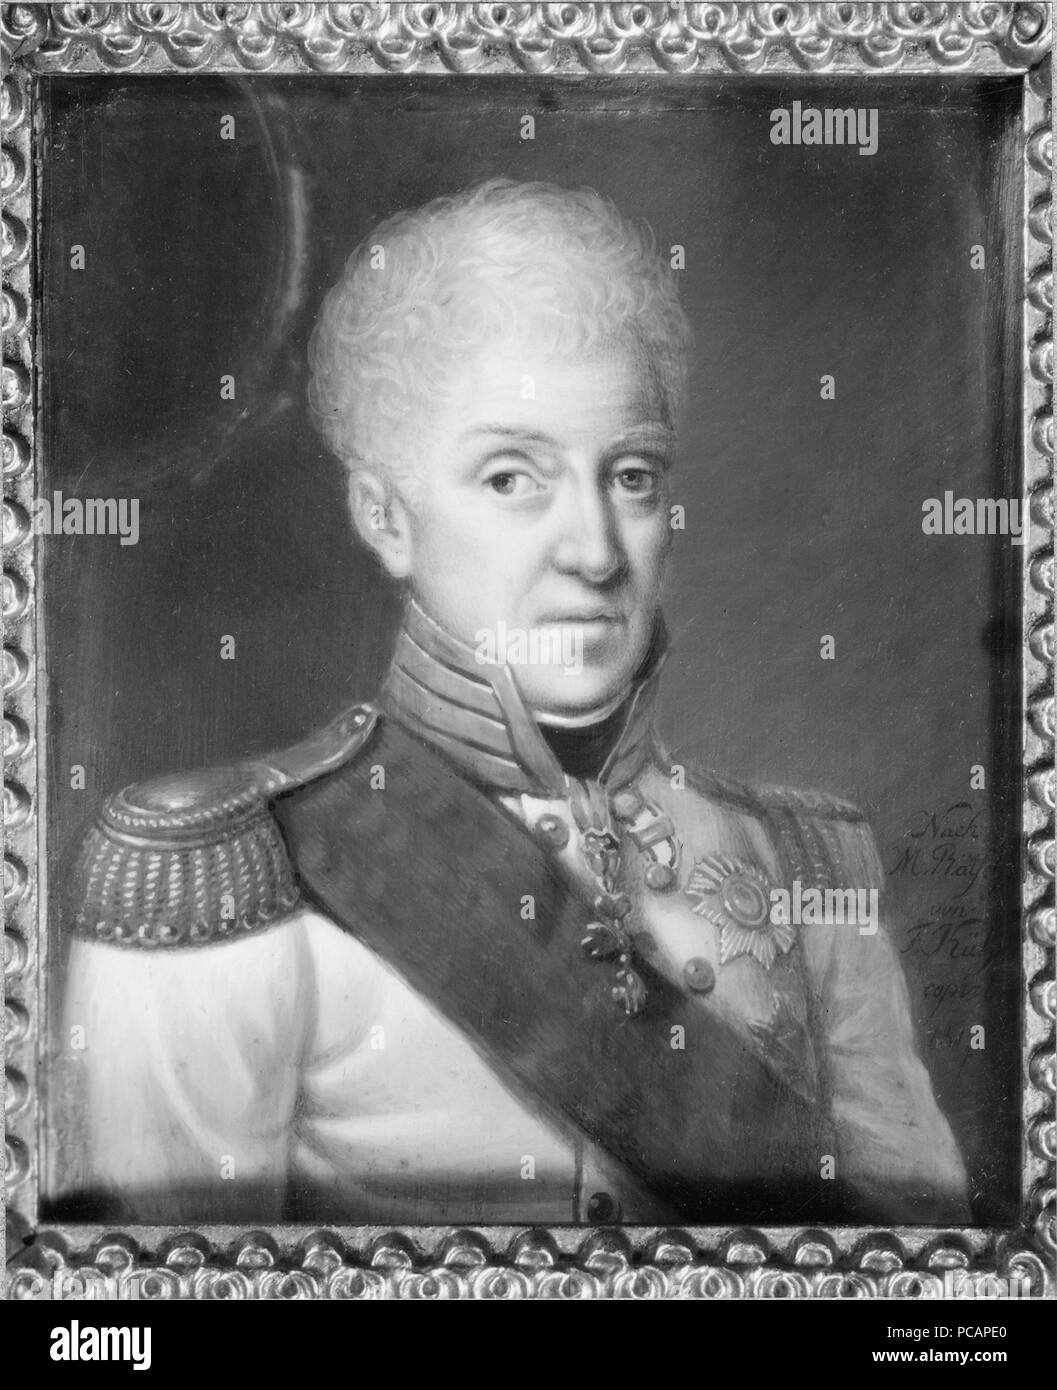 51 Anton I, 1755-1836, kung av Sachsen, pendang till NMDs 1889 (Friedrich Anton Joseph Kühne) - Nationalmuseum - 28748 Stock Photo